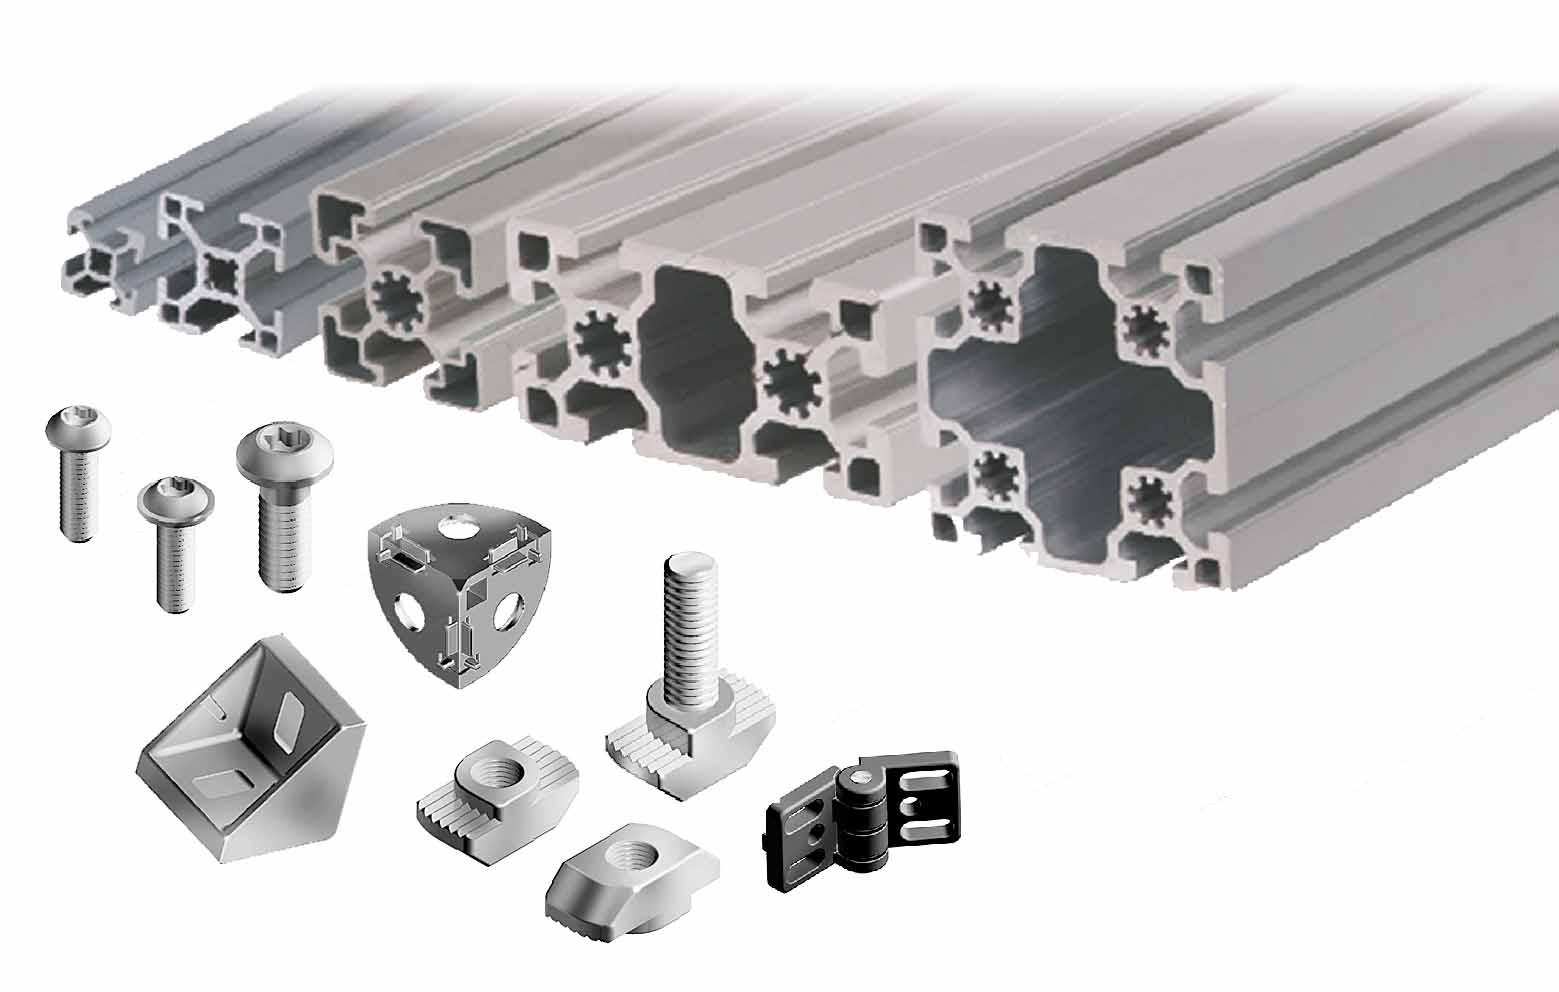 Perbedaan, kelebihan dan kekurangan antara profil aluminium ekstrusi dan produk paduan aluminium die-cast
        